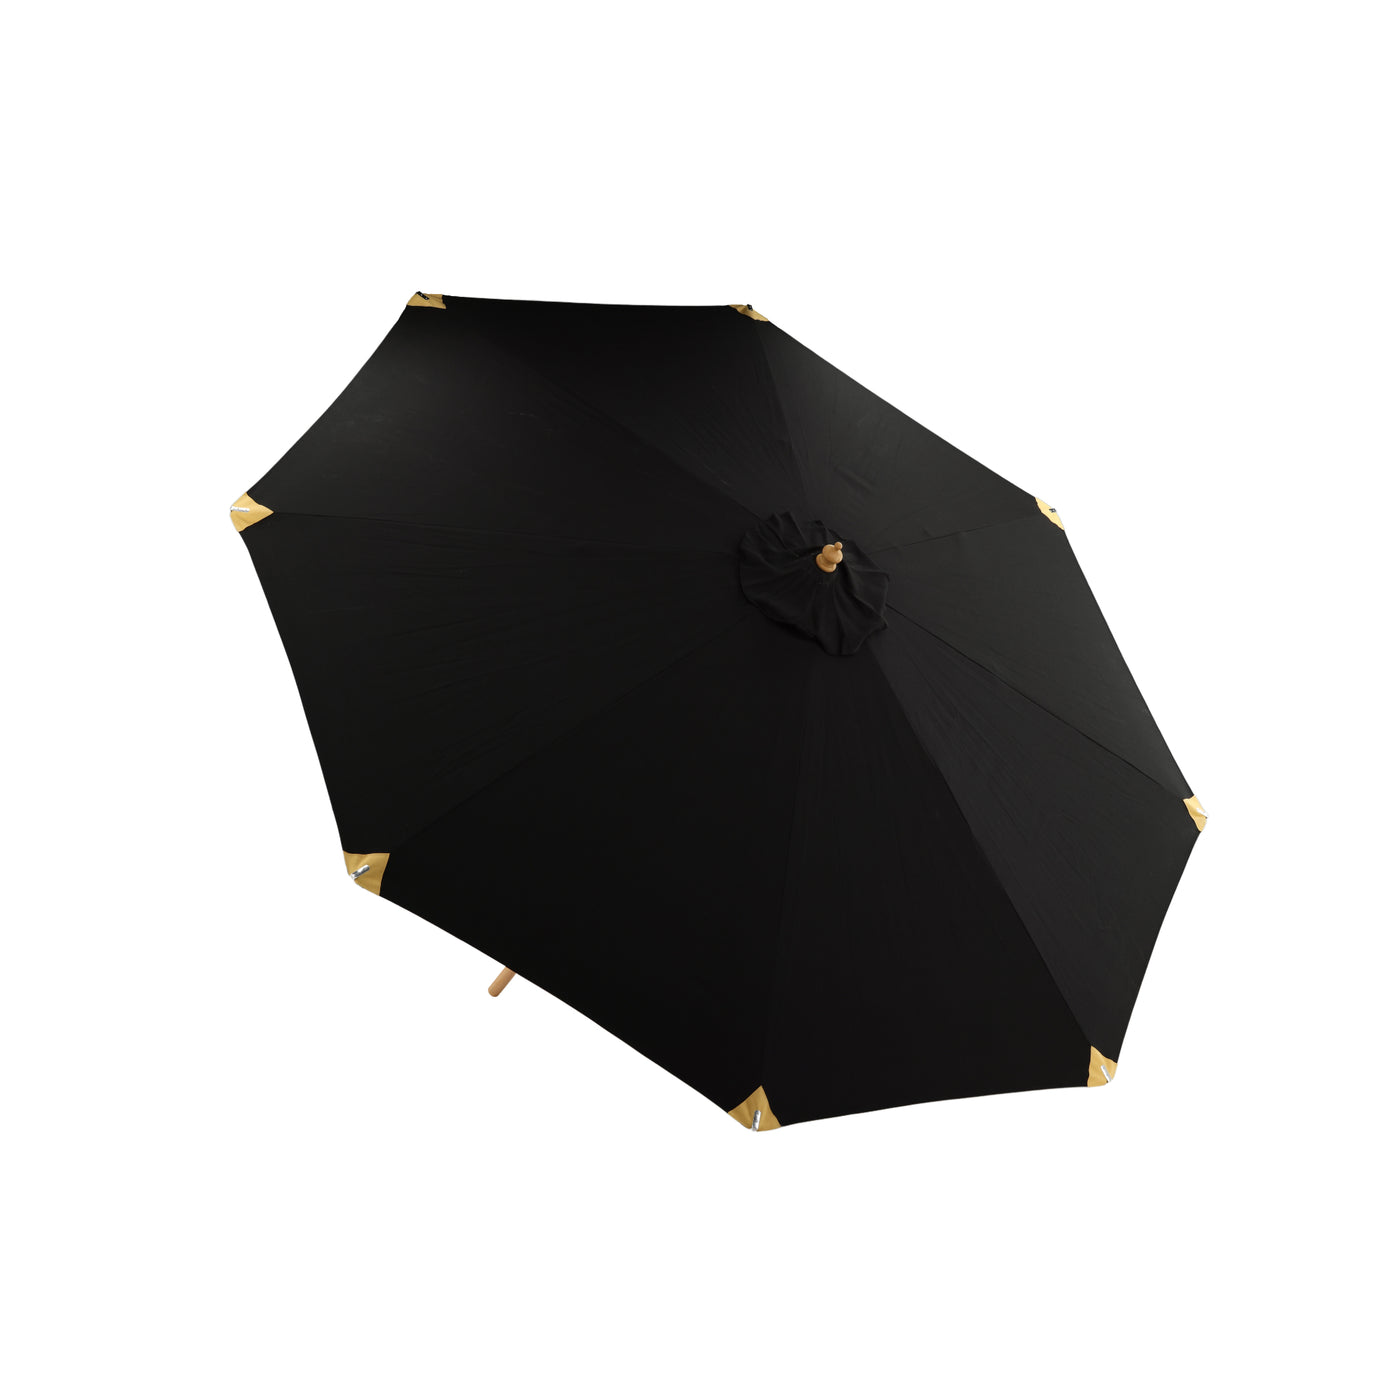 Olana - Regenschirm m. neigbar – Schwarz – 330 cm